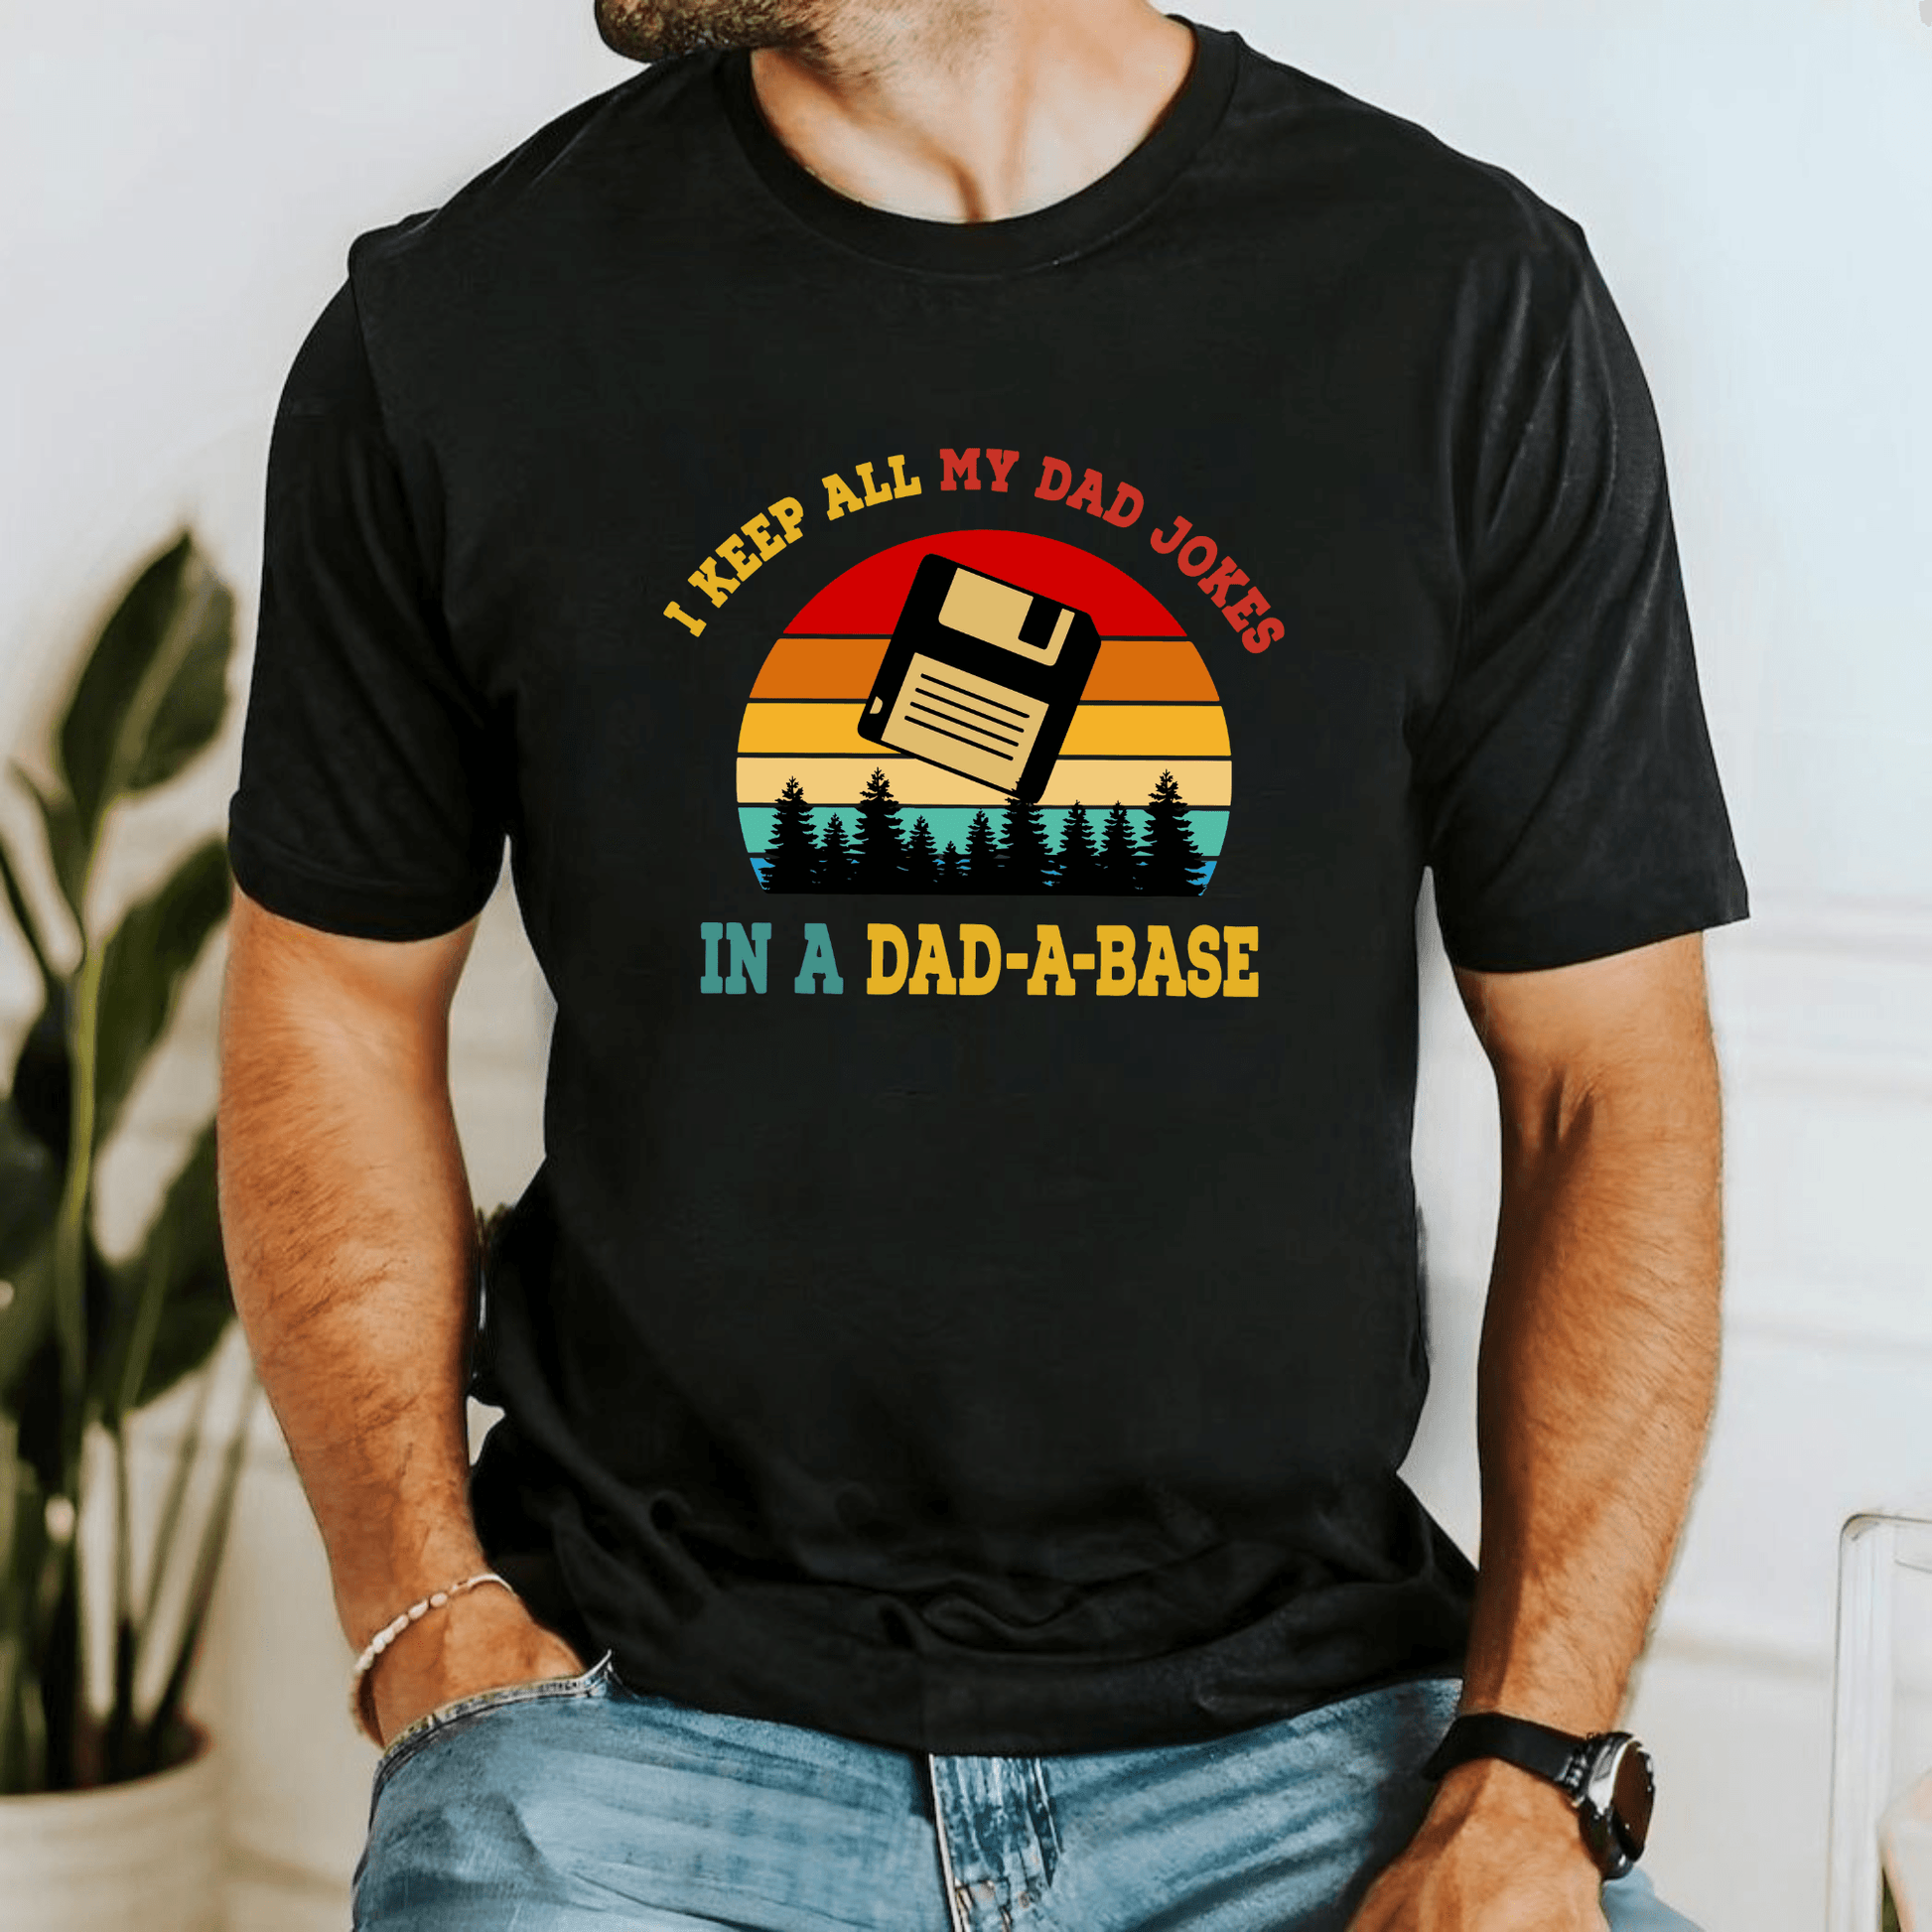 Dad-a-Base Humor Shirt - Das perfekte Geschenk für Väter - GiftHaus